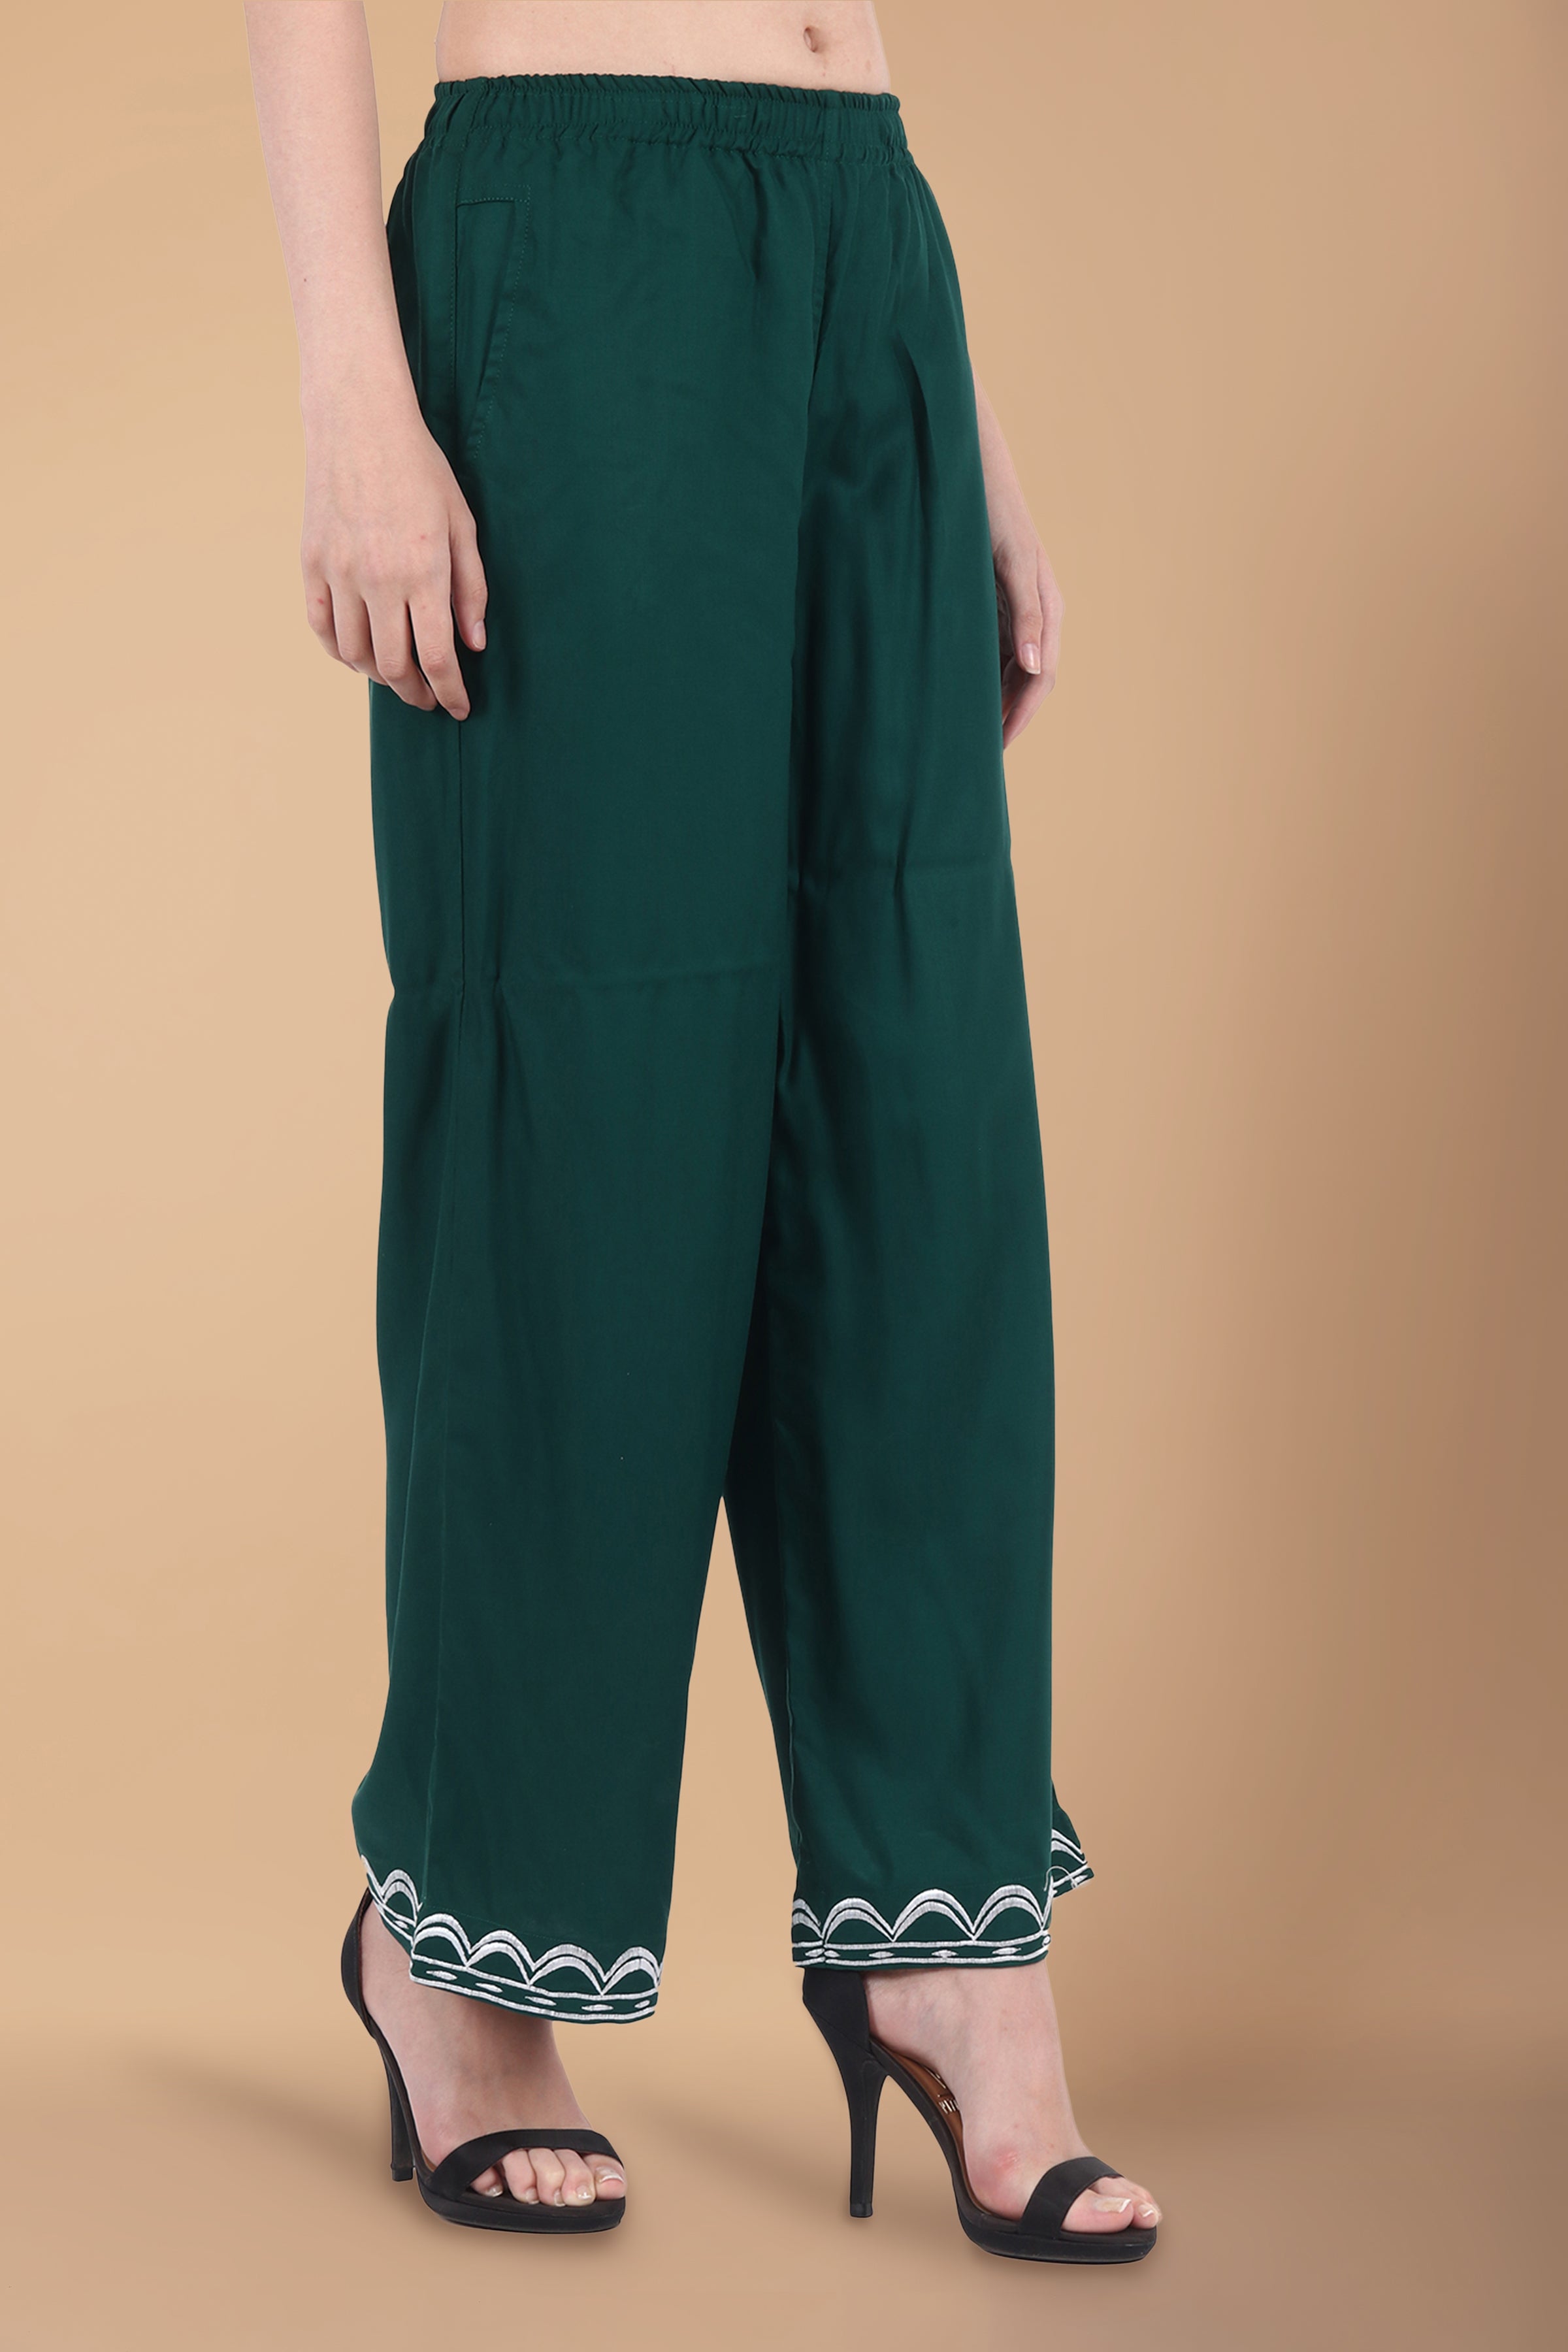 Arayna Women's Cotton Printed Straight Kurti Palazzo Pants Set With Dupatta  (Small), Blue : Amazon.in: Fashion